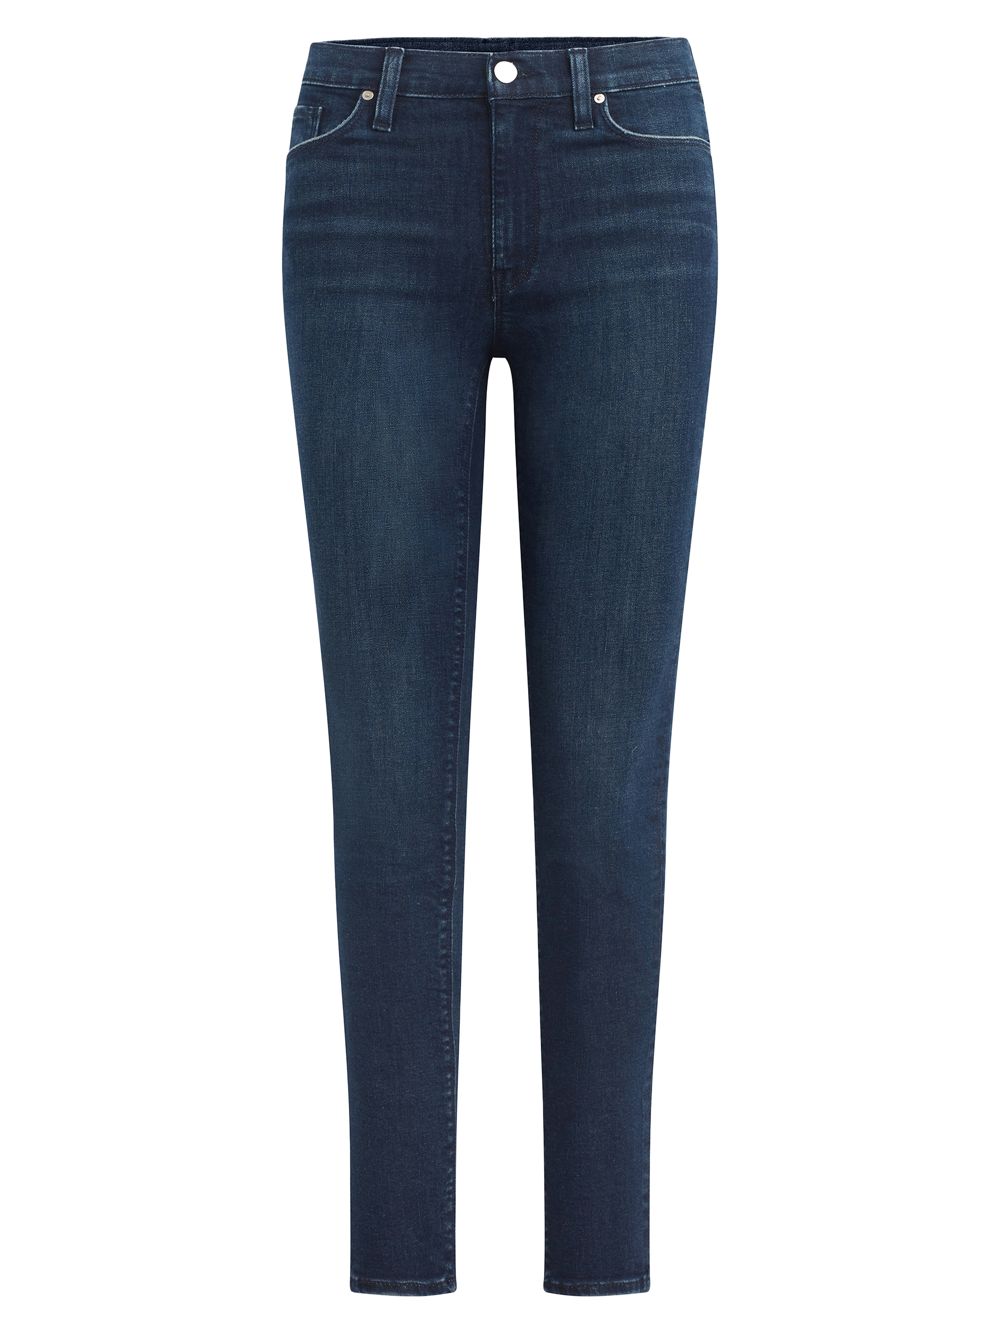 Укороченные джинсы суперскинни Barbara с высокой посадкой Hudson Jeans